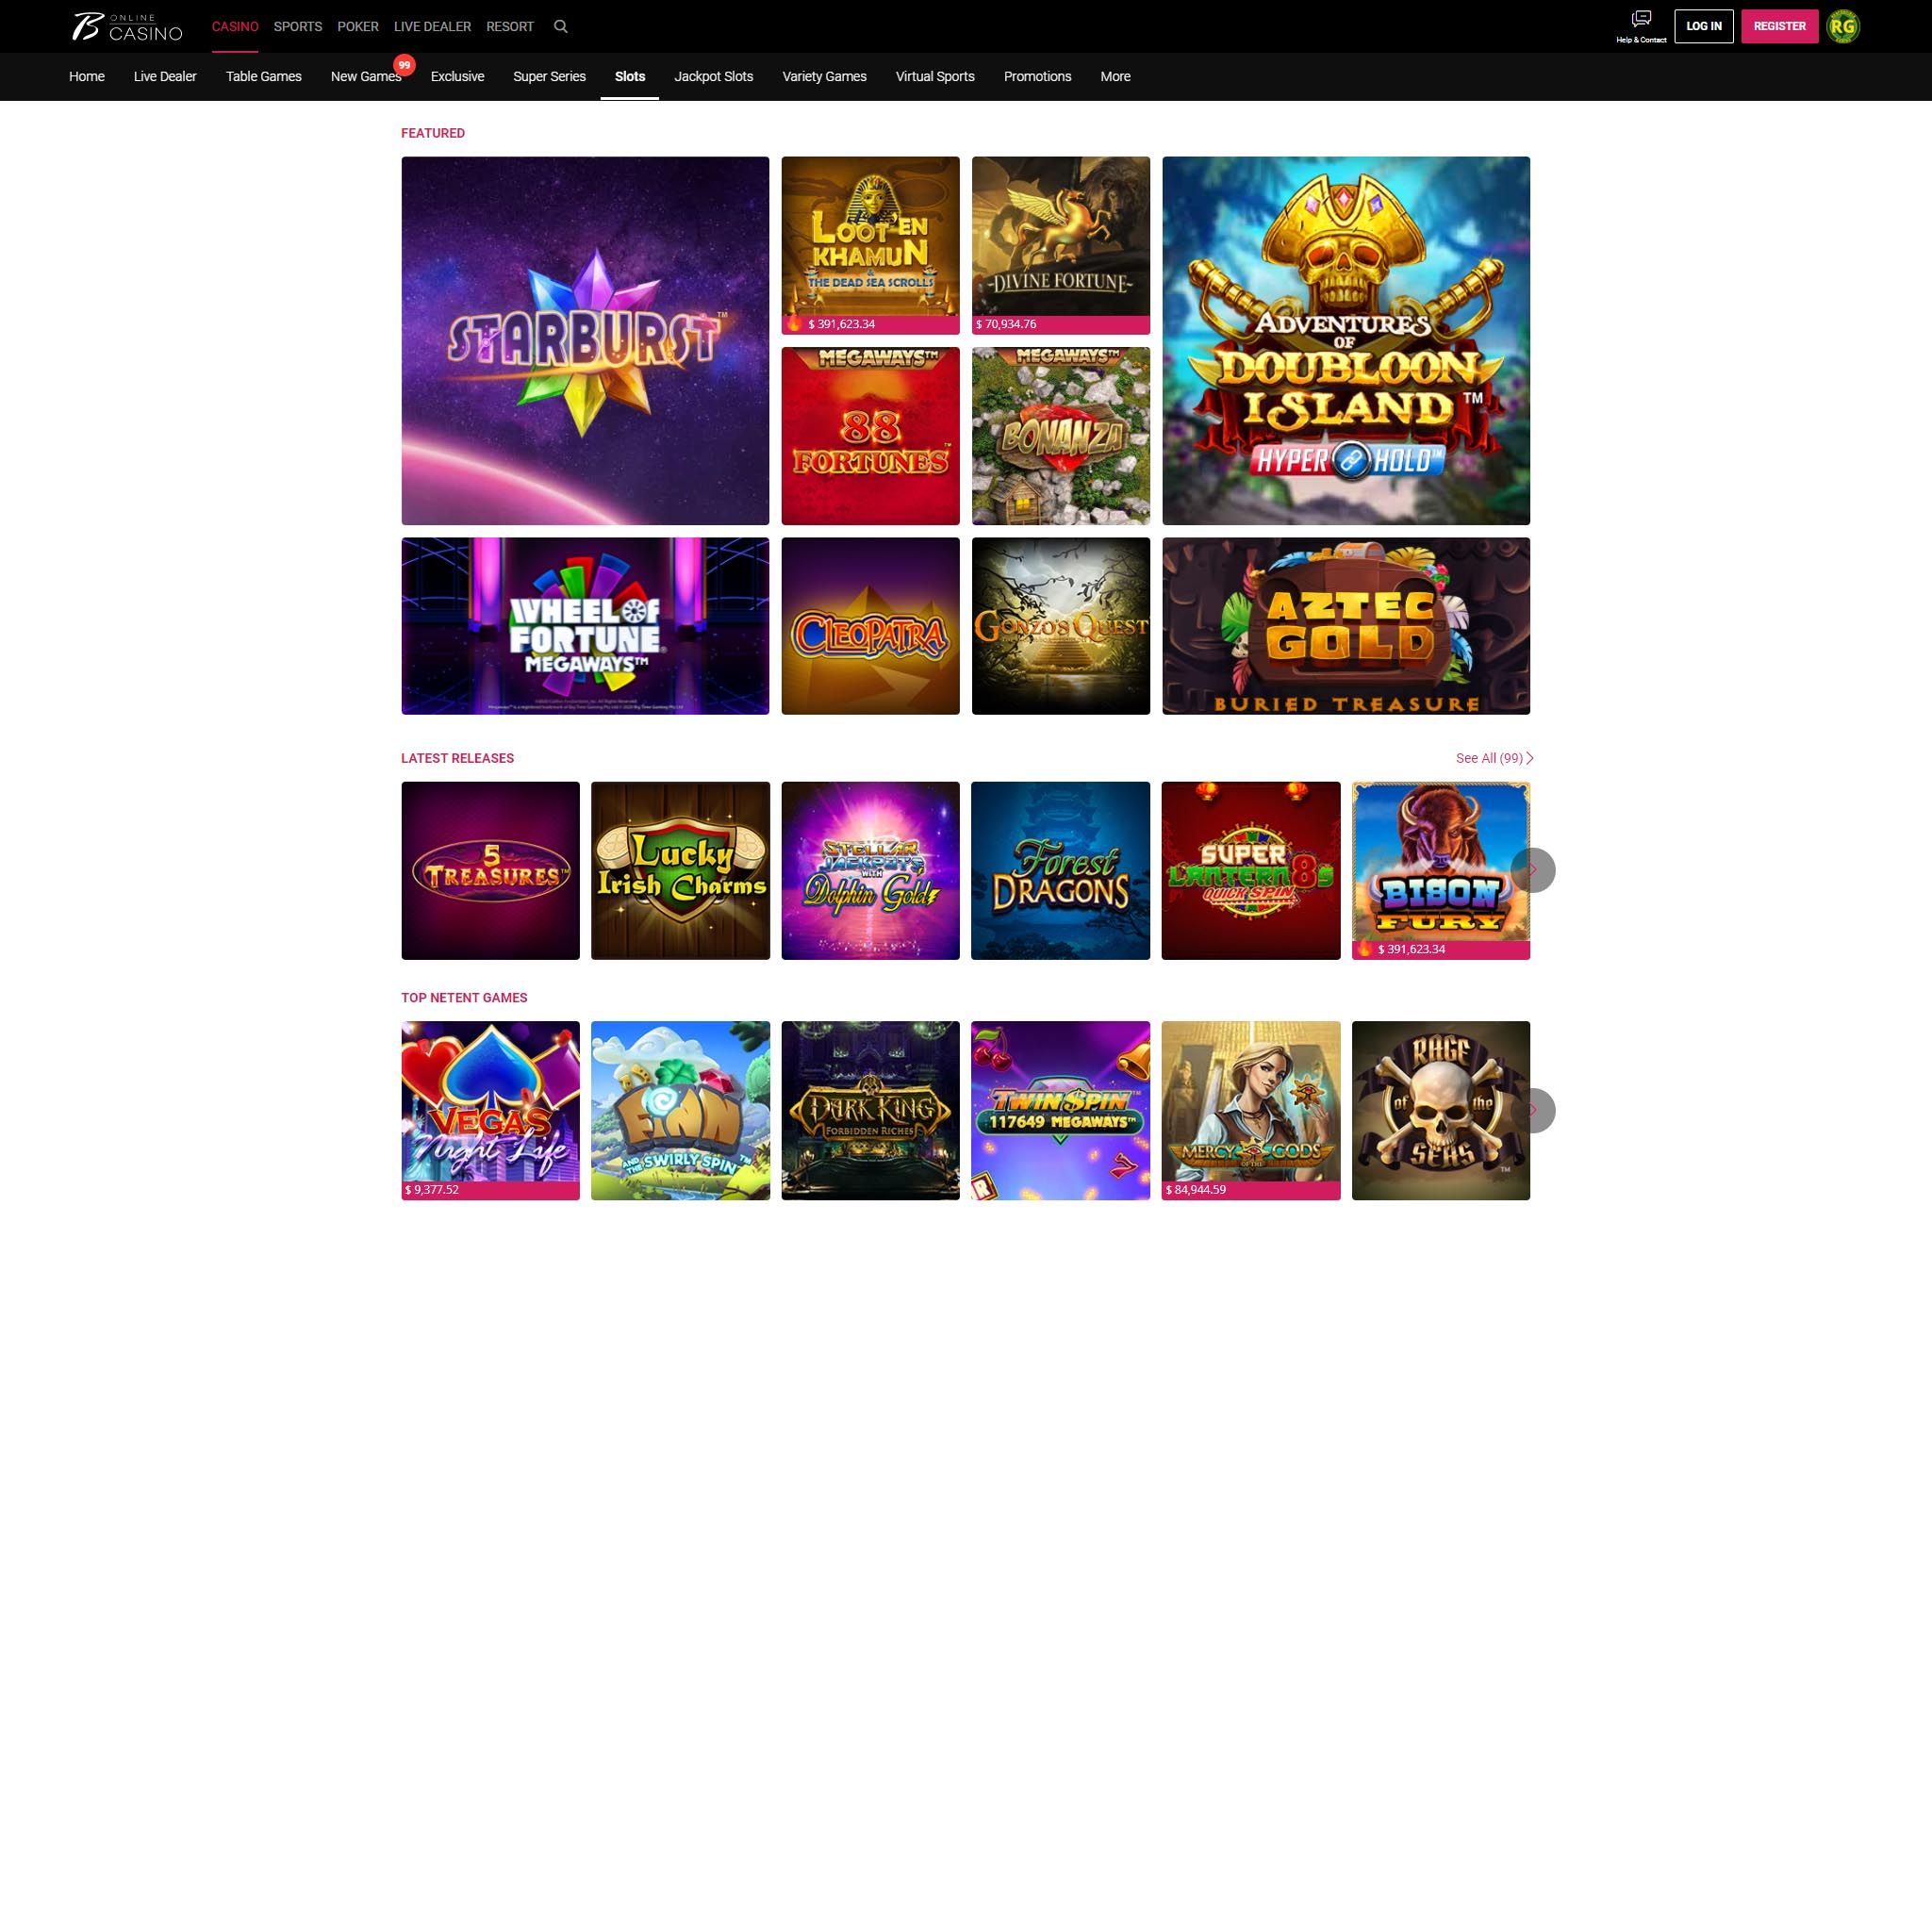 Borgata Casino full games catalog